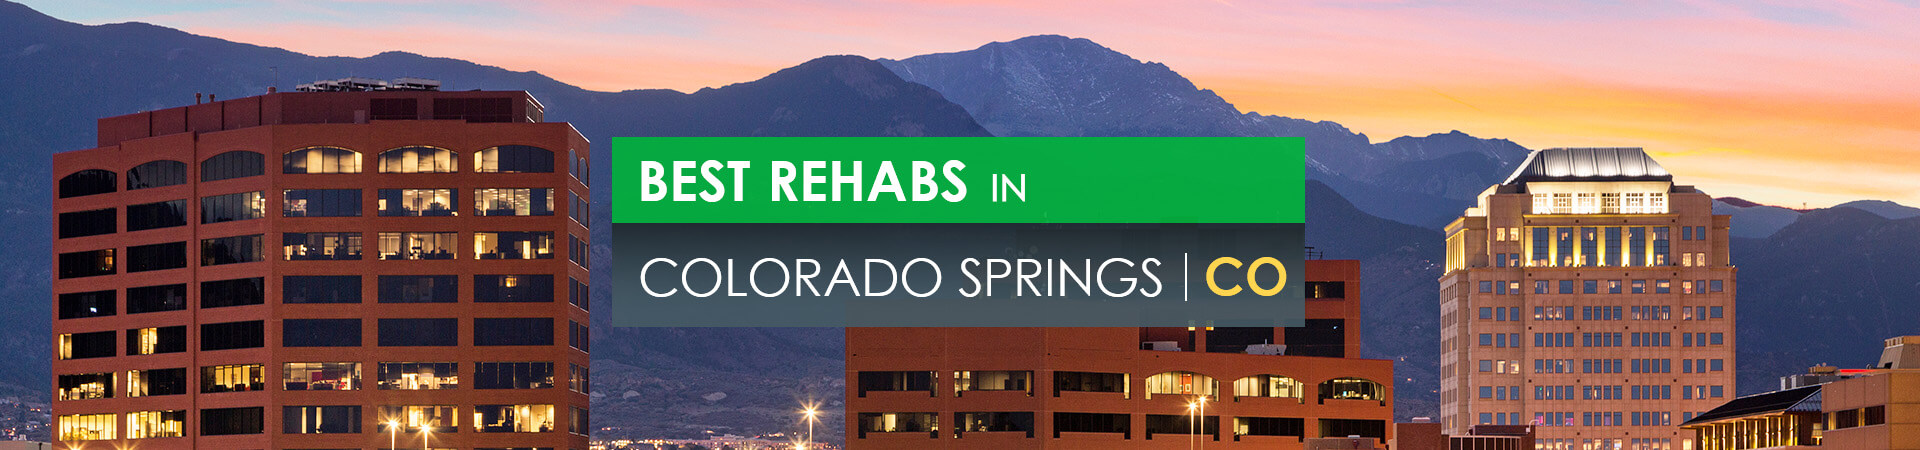 Best rehabs in Colorado Springs, CO